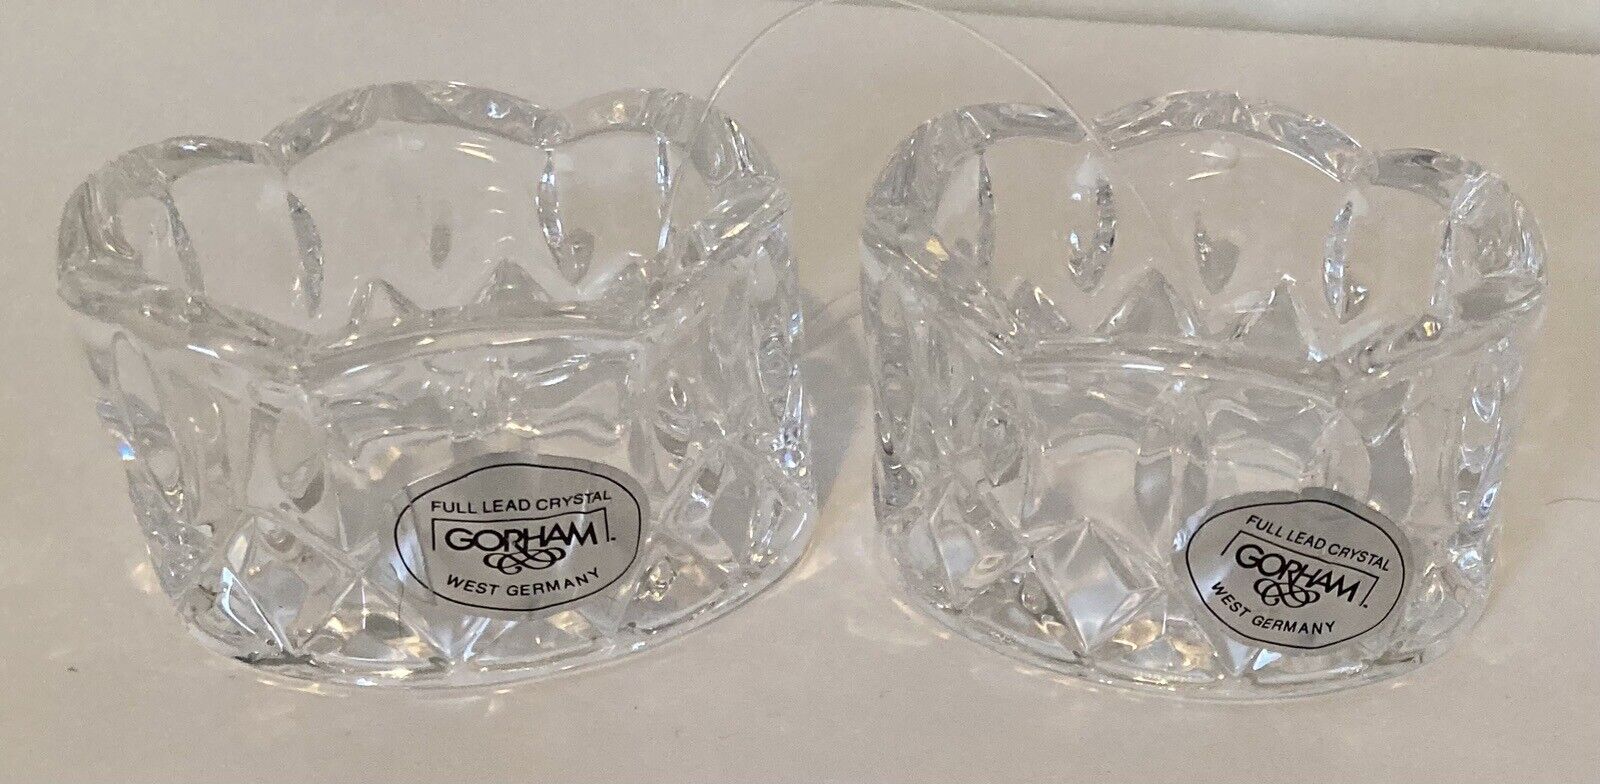 Gorham Full Lead Crystal Napkin Rings Set of 2